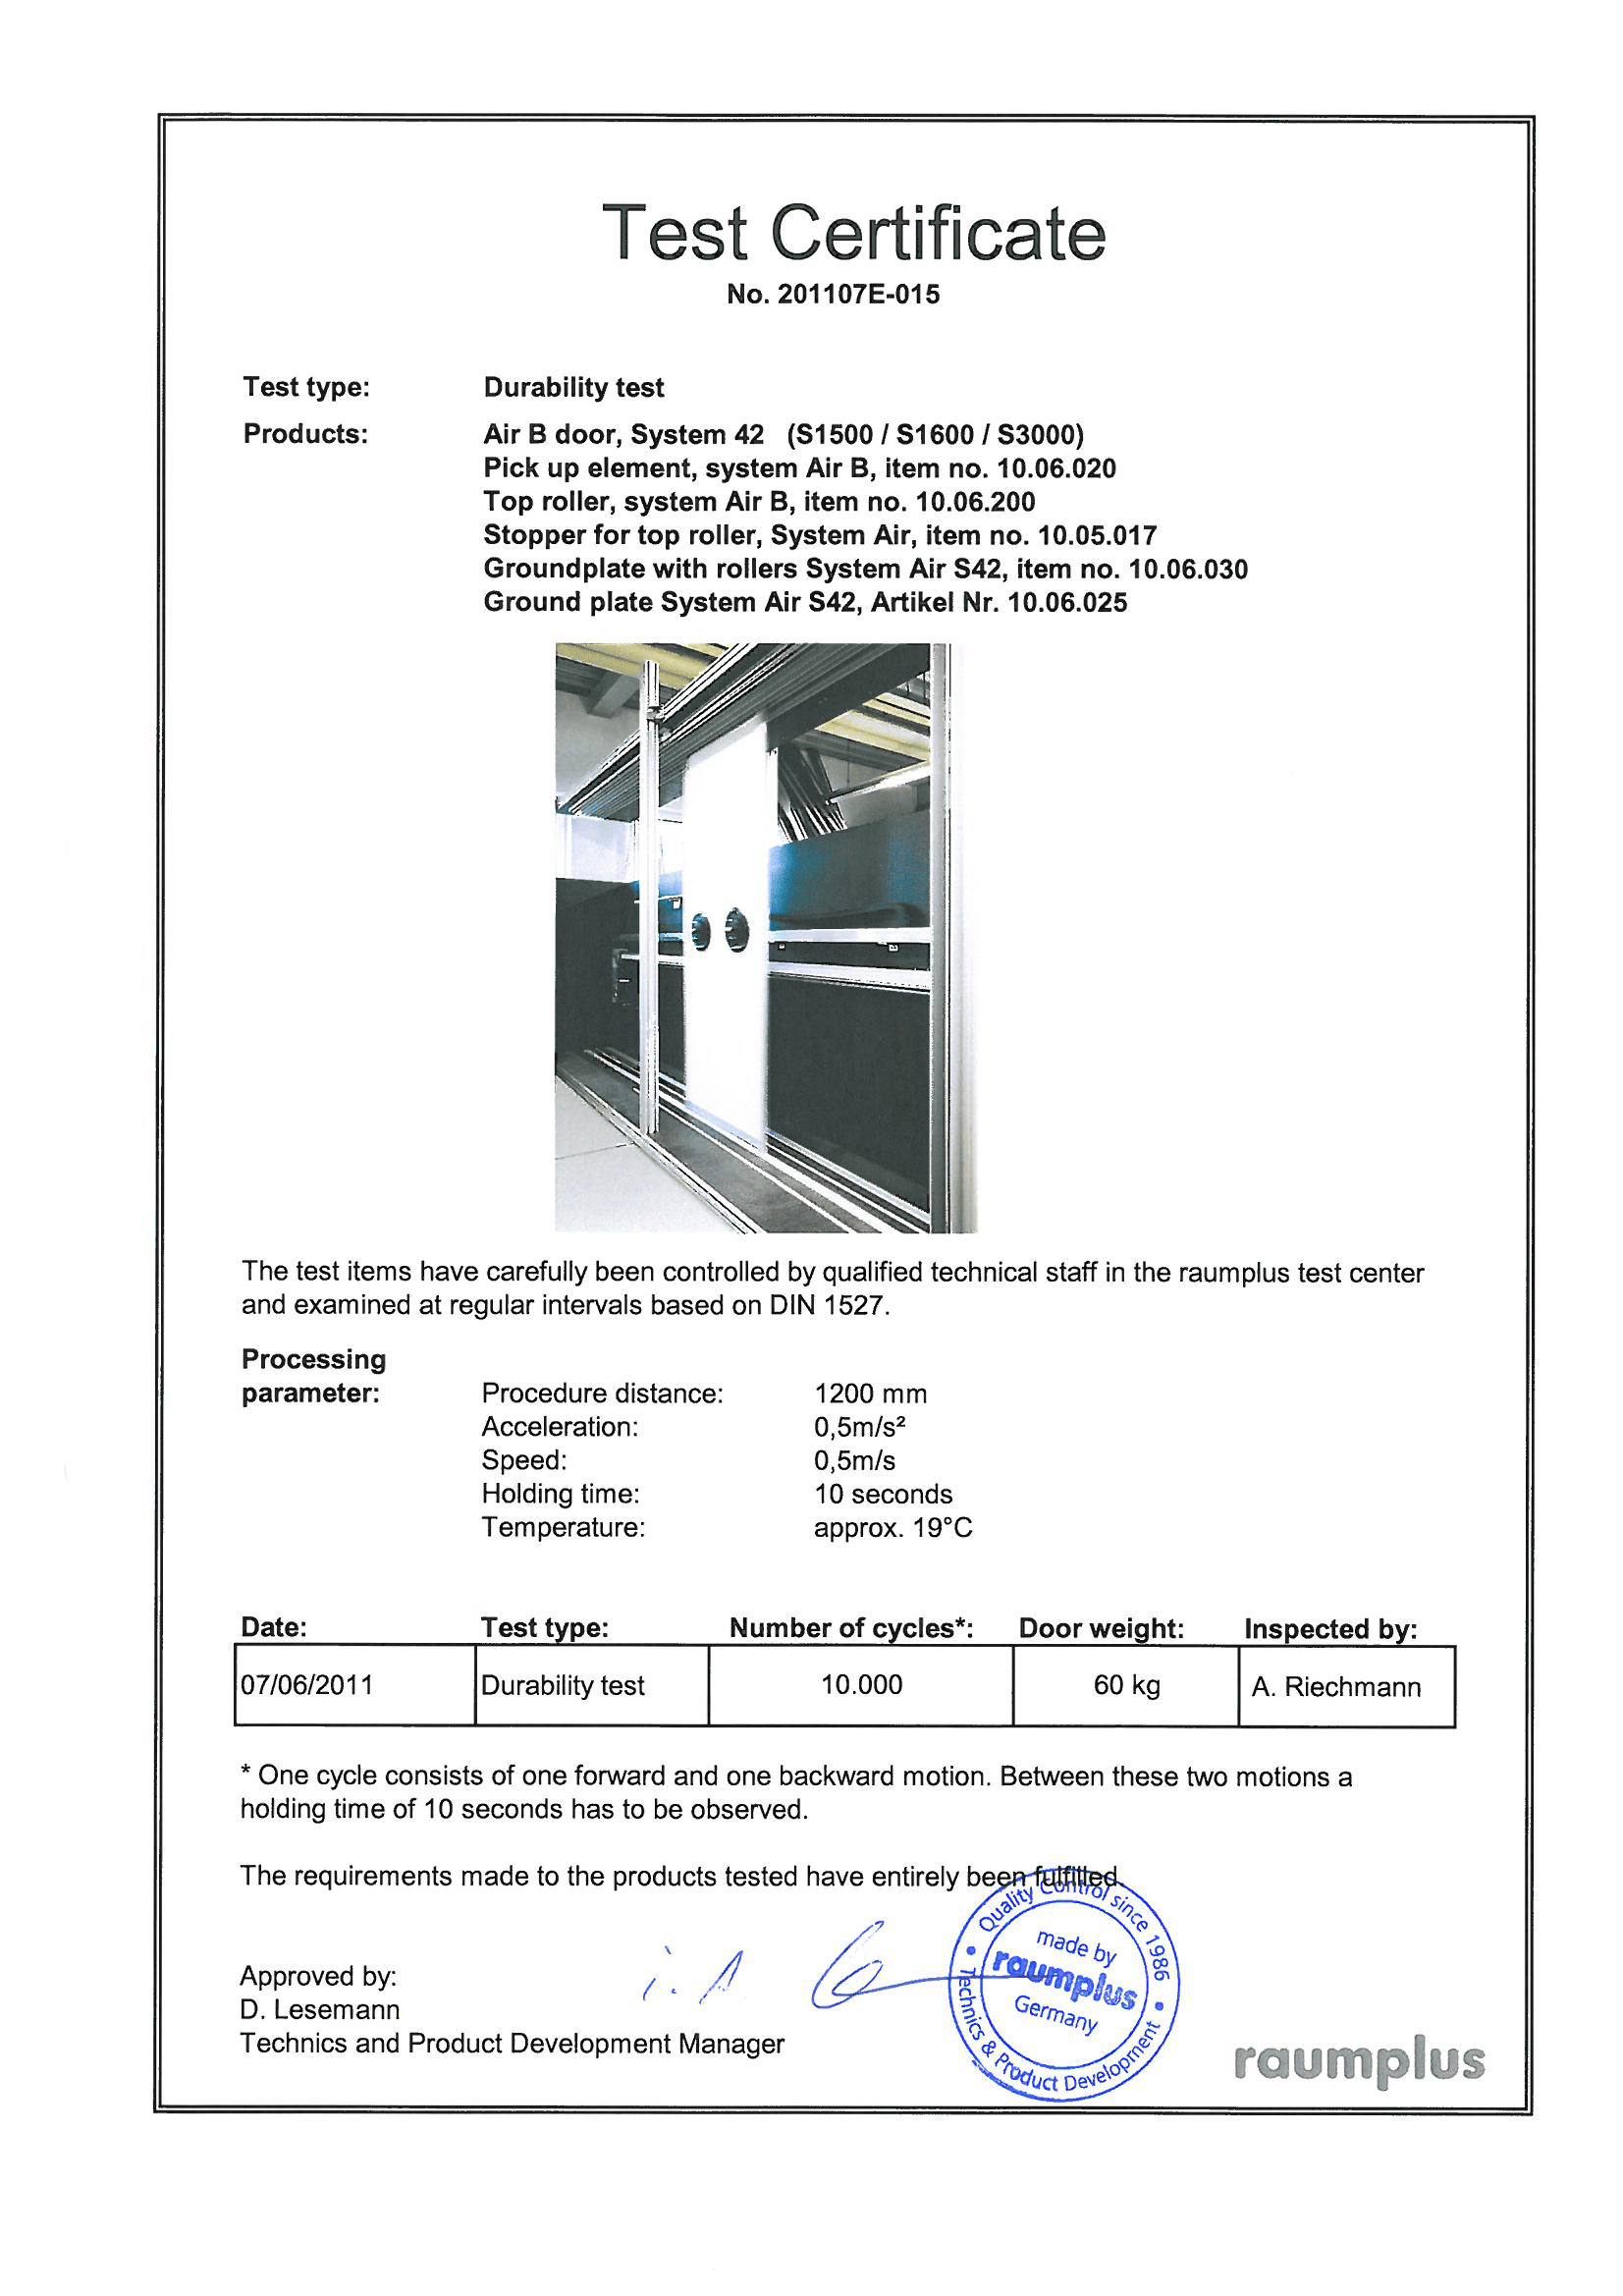 Сертификат тестирования системы подвесных перегородок AIR S42 (S1500/1600/3000) raumplus<br />
<br />
Тестирование образцов тщательно контролировалось квалифицированным техническим персоналом в центре raumplus.<br />
<br />
Сертификат подтверждает успешное прохождение теста системы перегородок AIR S42 (S1500/1600/3000) raumplus следующими исходными данными:<br />
Артикулы комплектующих, входящий в систему: 10.06.020, 10.06.200, 10.05.017, 10.06.030, 10.06.025.<br />
Вес перегородки 60 кг, 10.000 циклов.